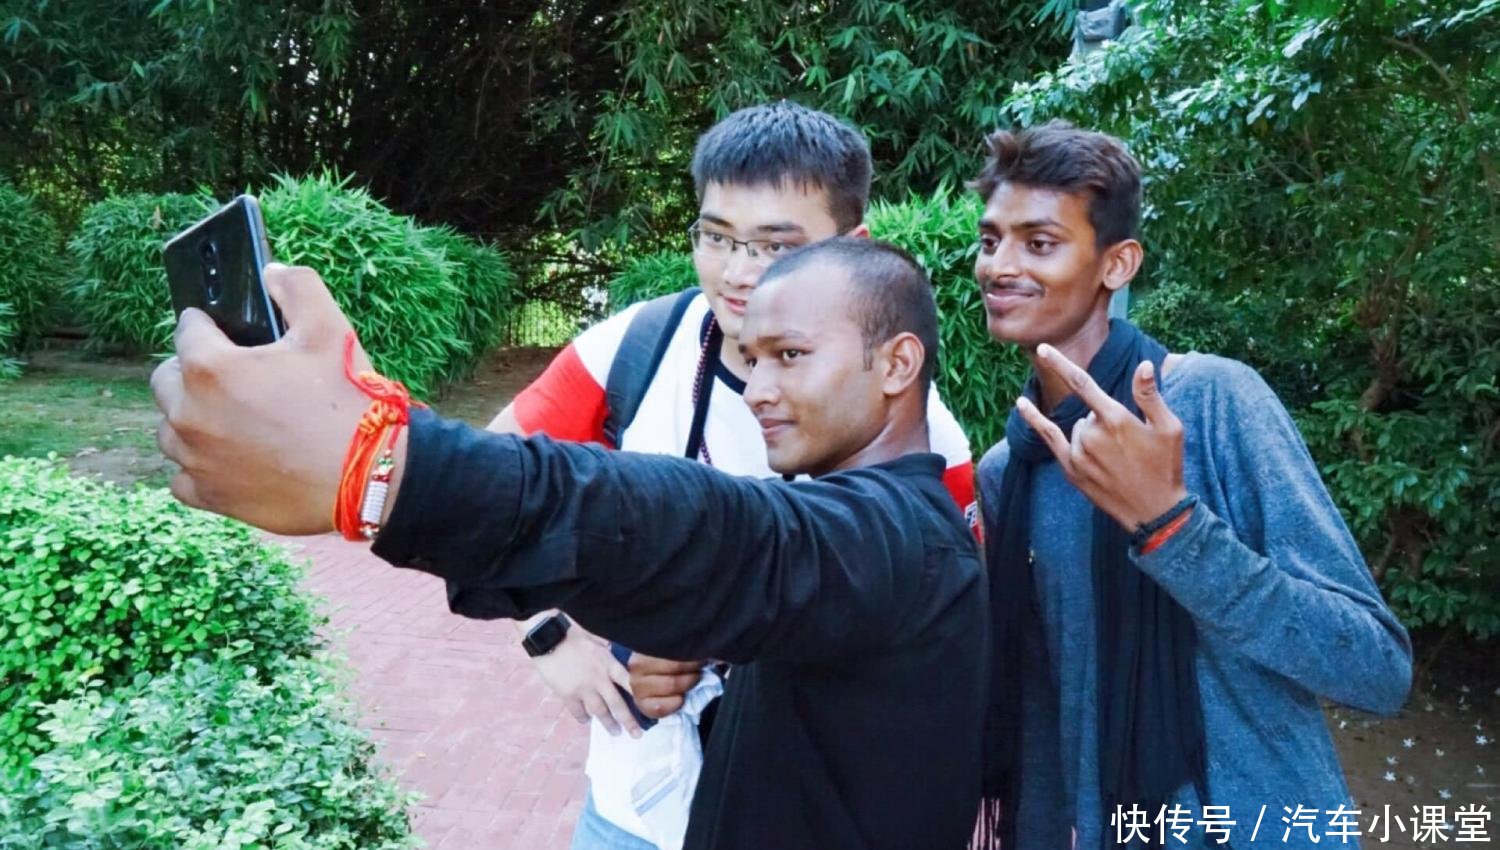 为什么印度人喜欢在街上抓中国游客拍照? 印度